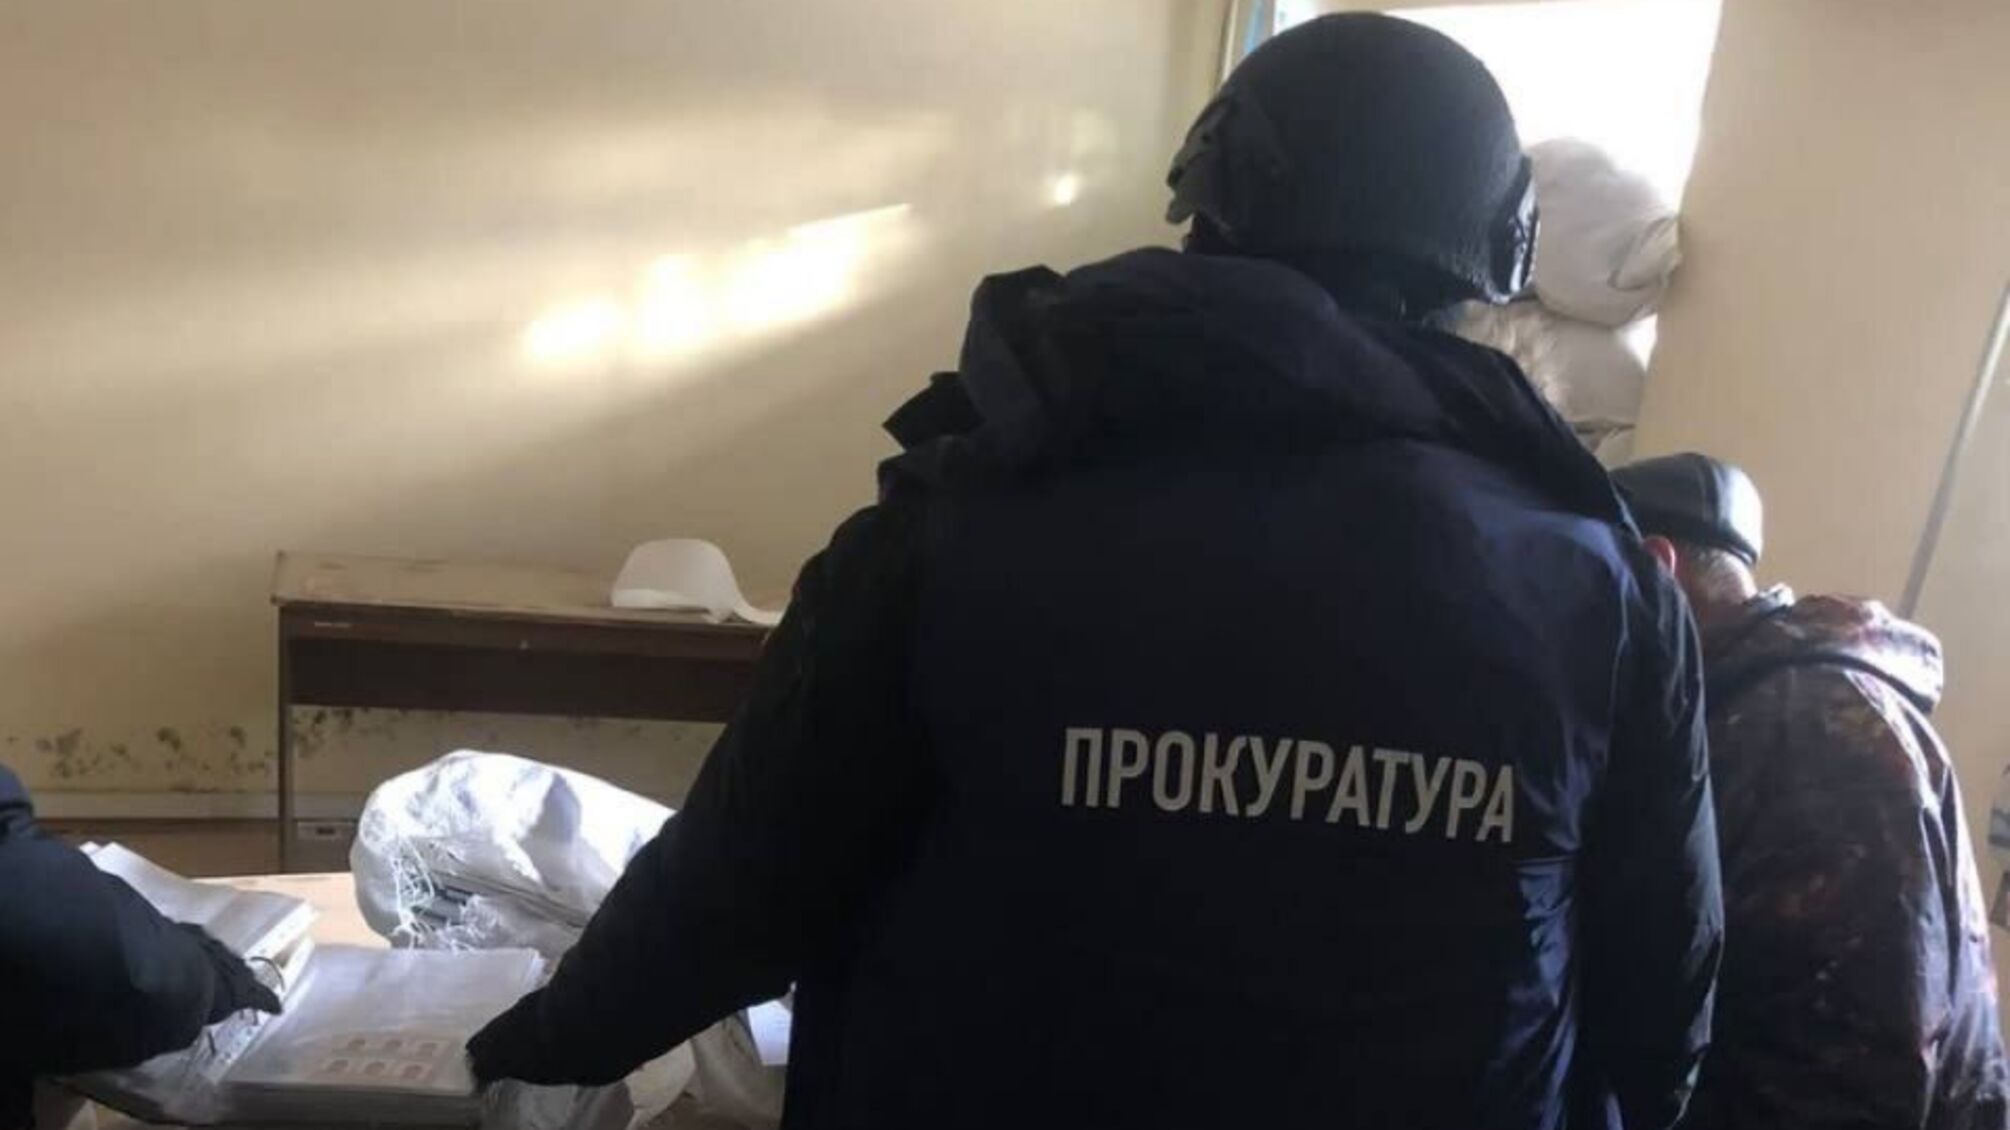 оккупанты, в панике убегая из Харьковщины, оставили документы псевдополицейских